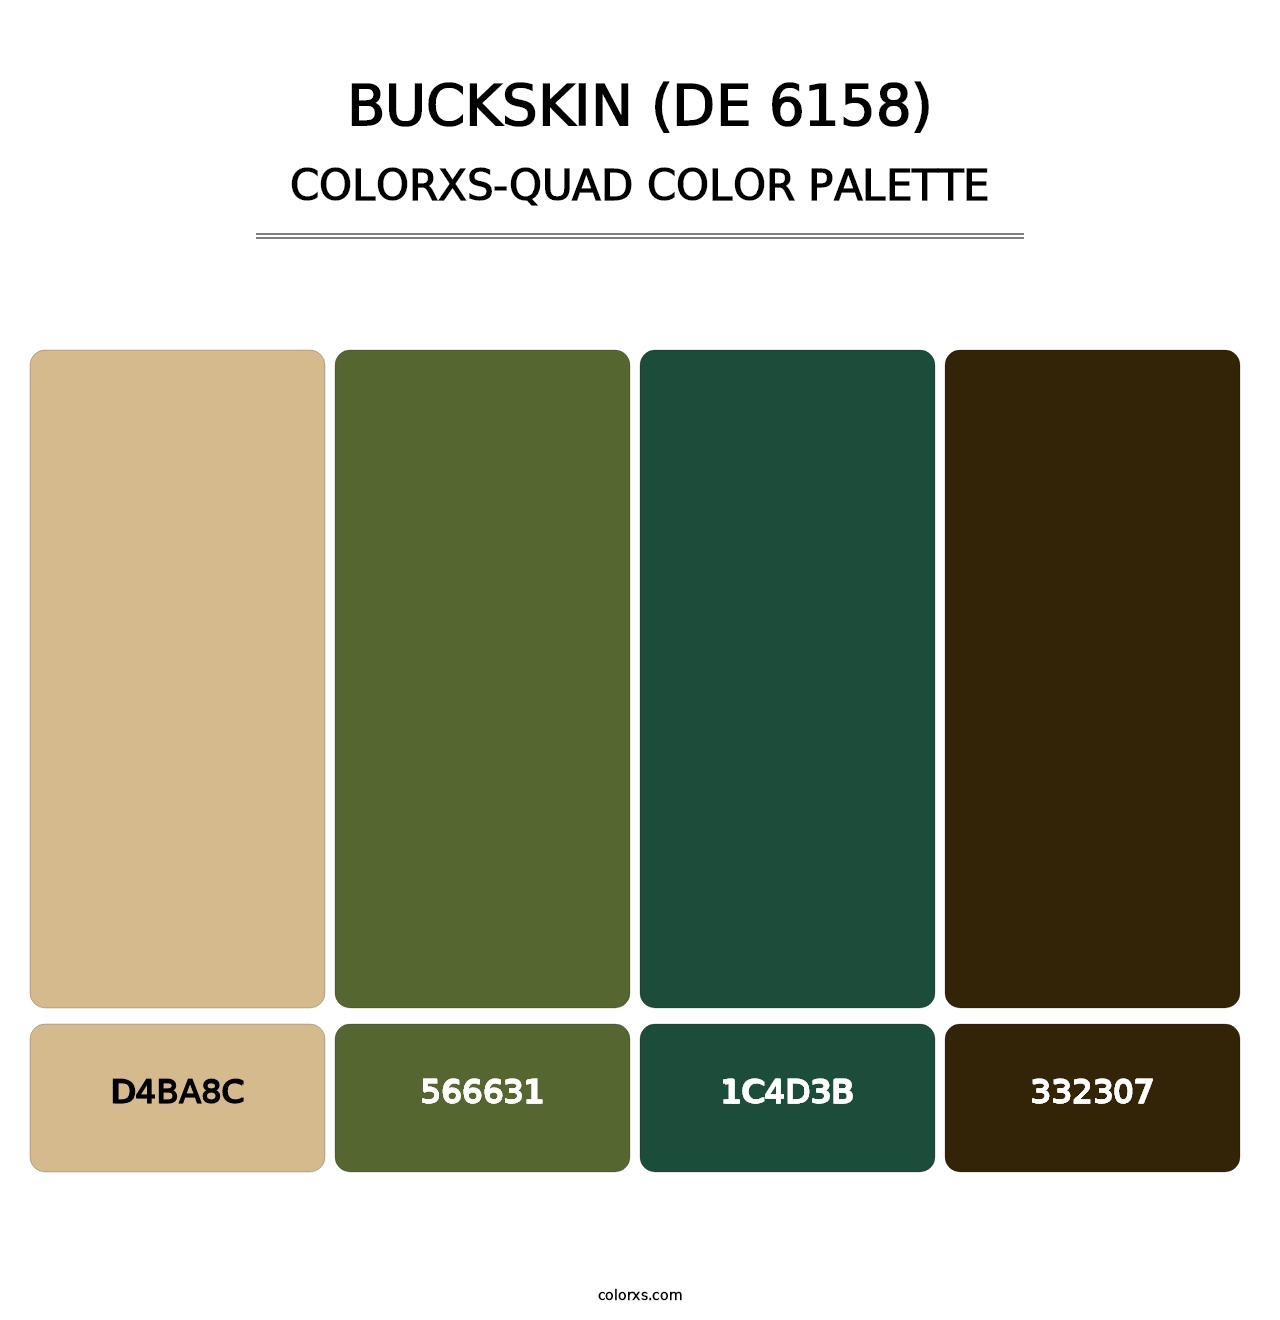 Buckskin (DE 6158) - Colorxs Quad Palette